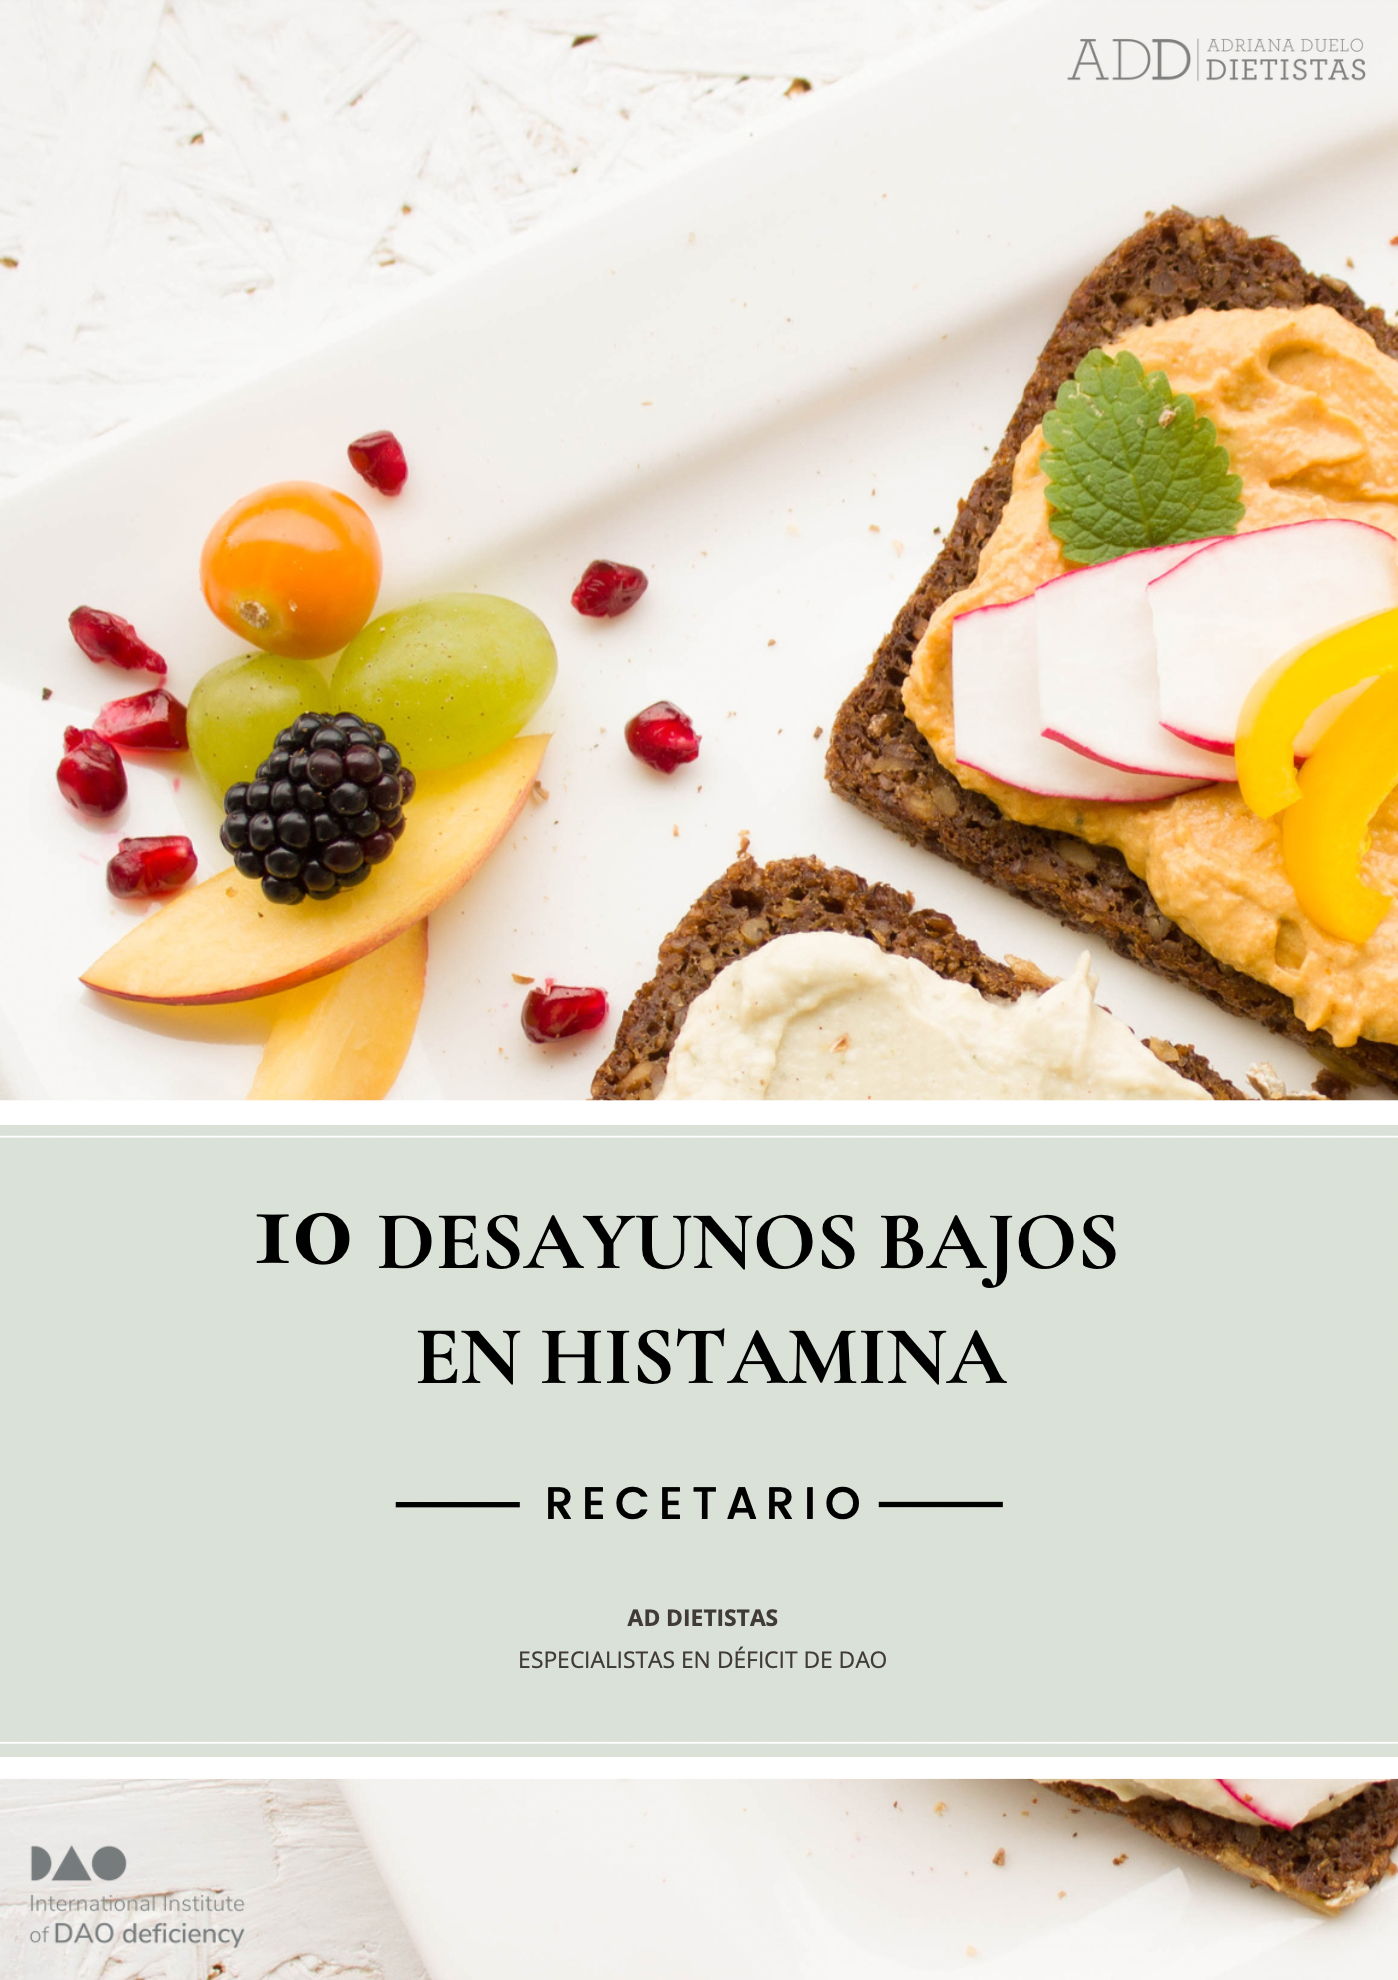 10 Desayunos bajos en histamina | AD Dietistas